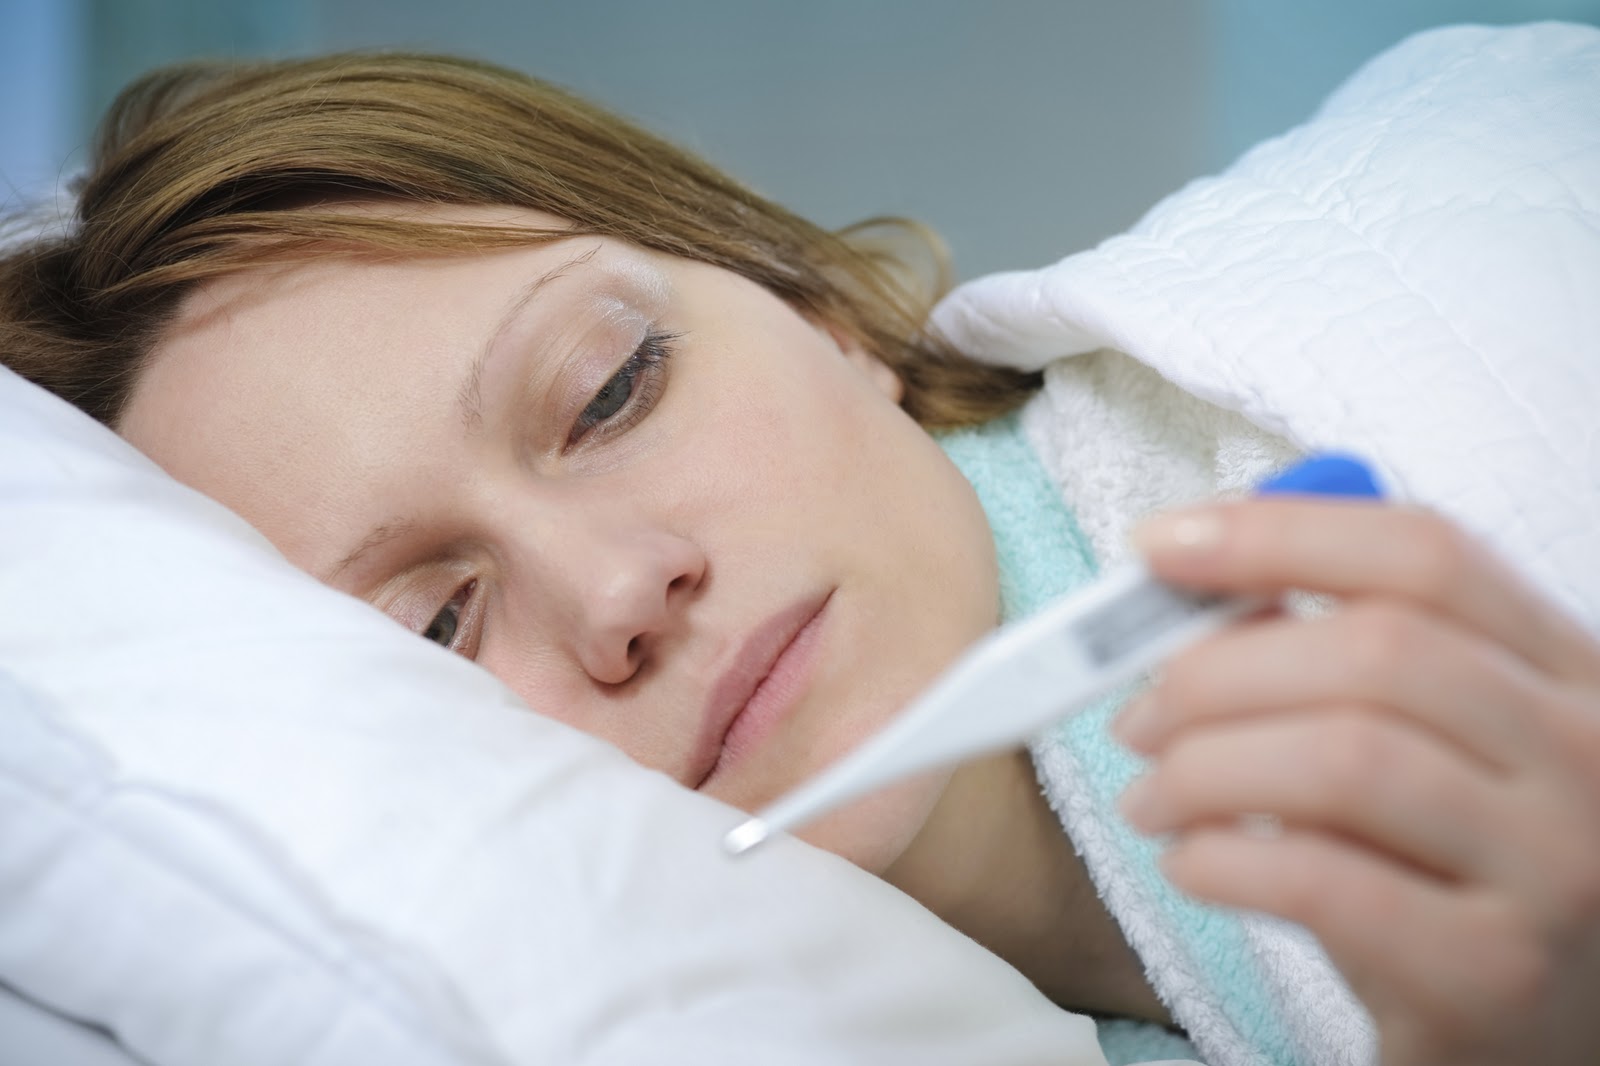 Jelgavā saslimšana ar gripu sasniegusi epidēmijas apmērus